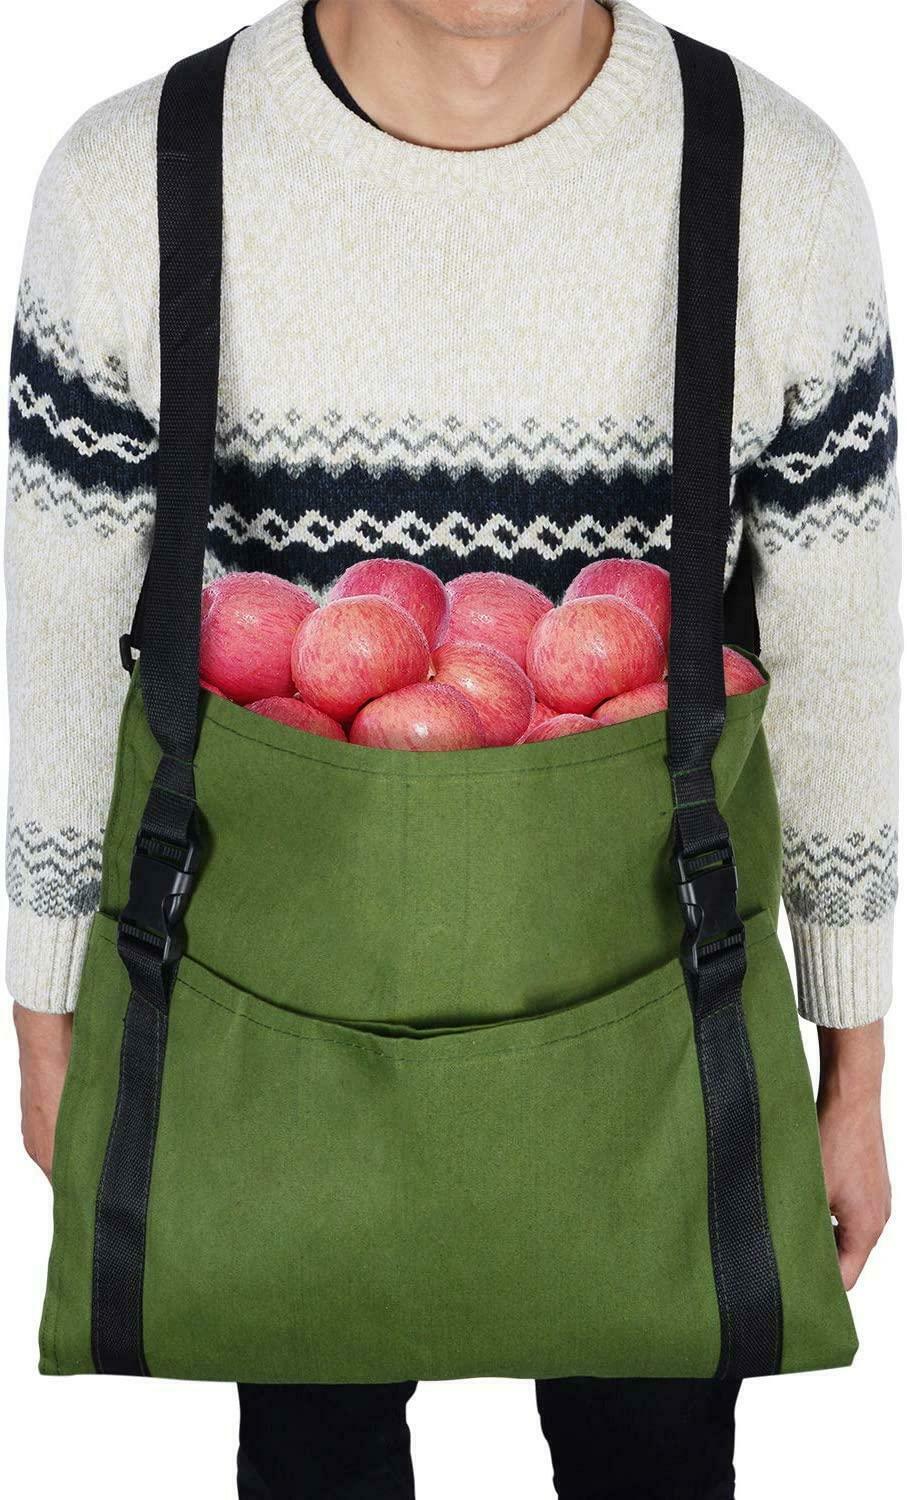 Ostaa Vihannesten sato-omenat marjapuutarhatyökalu esiliina hedelmien keräilysäkki,Vihannesten sato-omenat marjapuutarhatyökalu esiliina hedelmien keräilysäkki Hinta,Vihannesten sato-omenat marjapuutarhatyökalu esiliina hedelmien keräilysäkki tuotemerkkejä,Vihannesten sato-omenat marjapuutarhatyökalu esiliina hedelmien keräilysäkki Valmistaja. Vihannesten sato-omenat marjapuutarhatyökalu esiliina hedelmien keräilysäkki Lainausmerkit,Vihannesten sato-omenat marjapuutarhatyökalu esiliina hedelmien keräilysäkki Yhtiö,